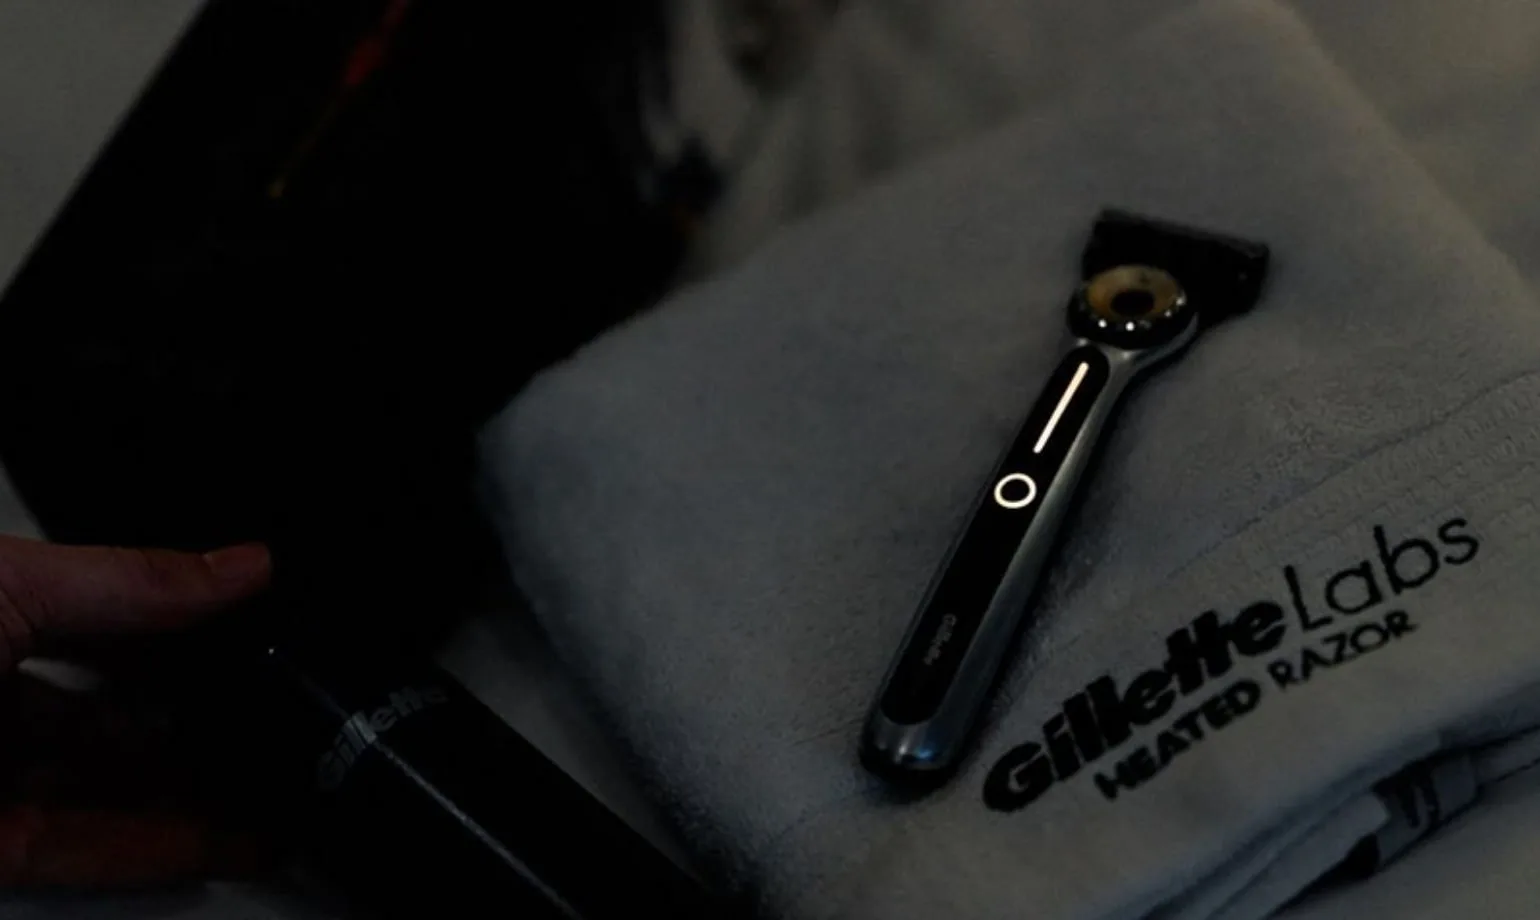 Le nouveau rasoir chauffant de Gillette